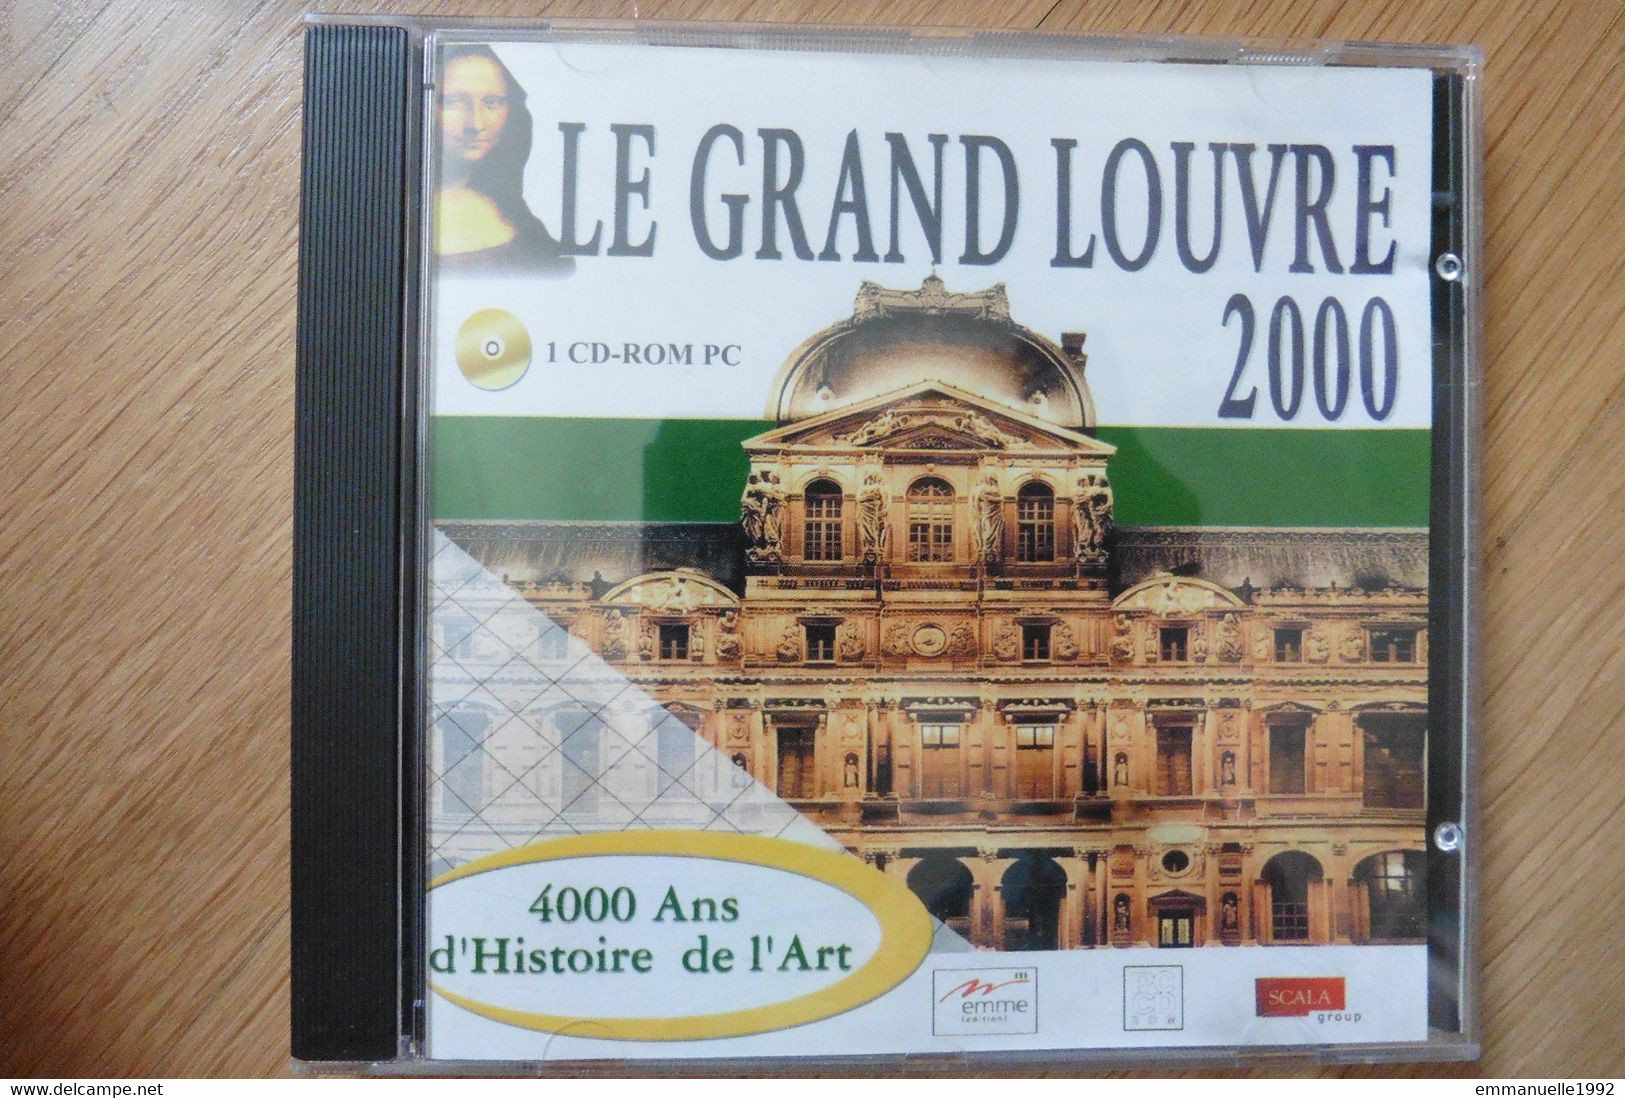 Lot 2 CD Rom PC Le Grand Louvre 2000 Le Musée Et Ses Chefs D'oeuvre Histoire Art - Altri Accessori